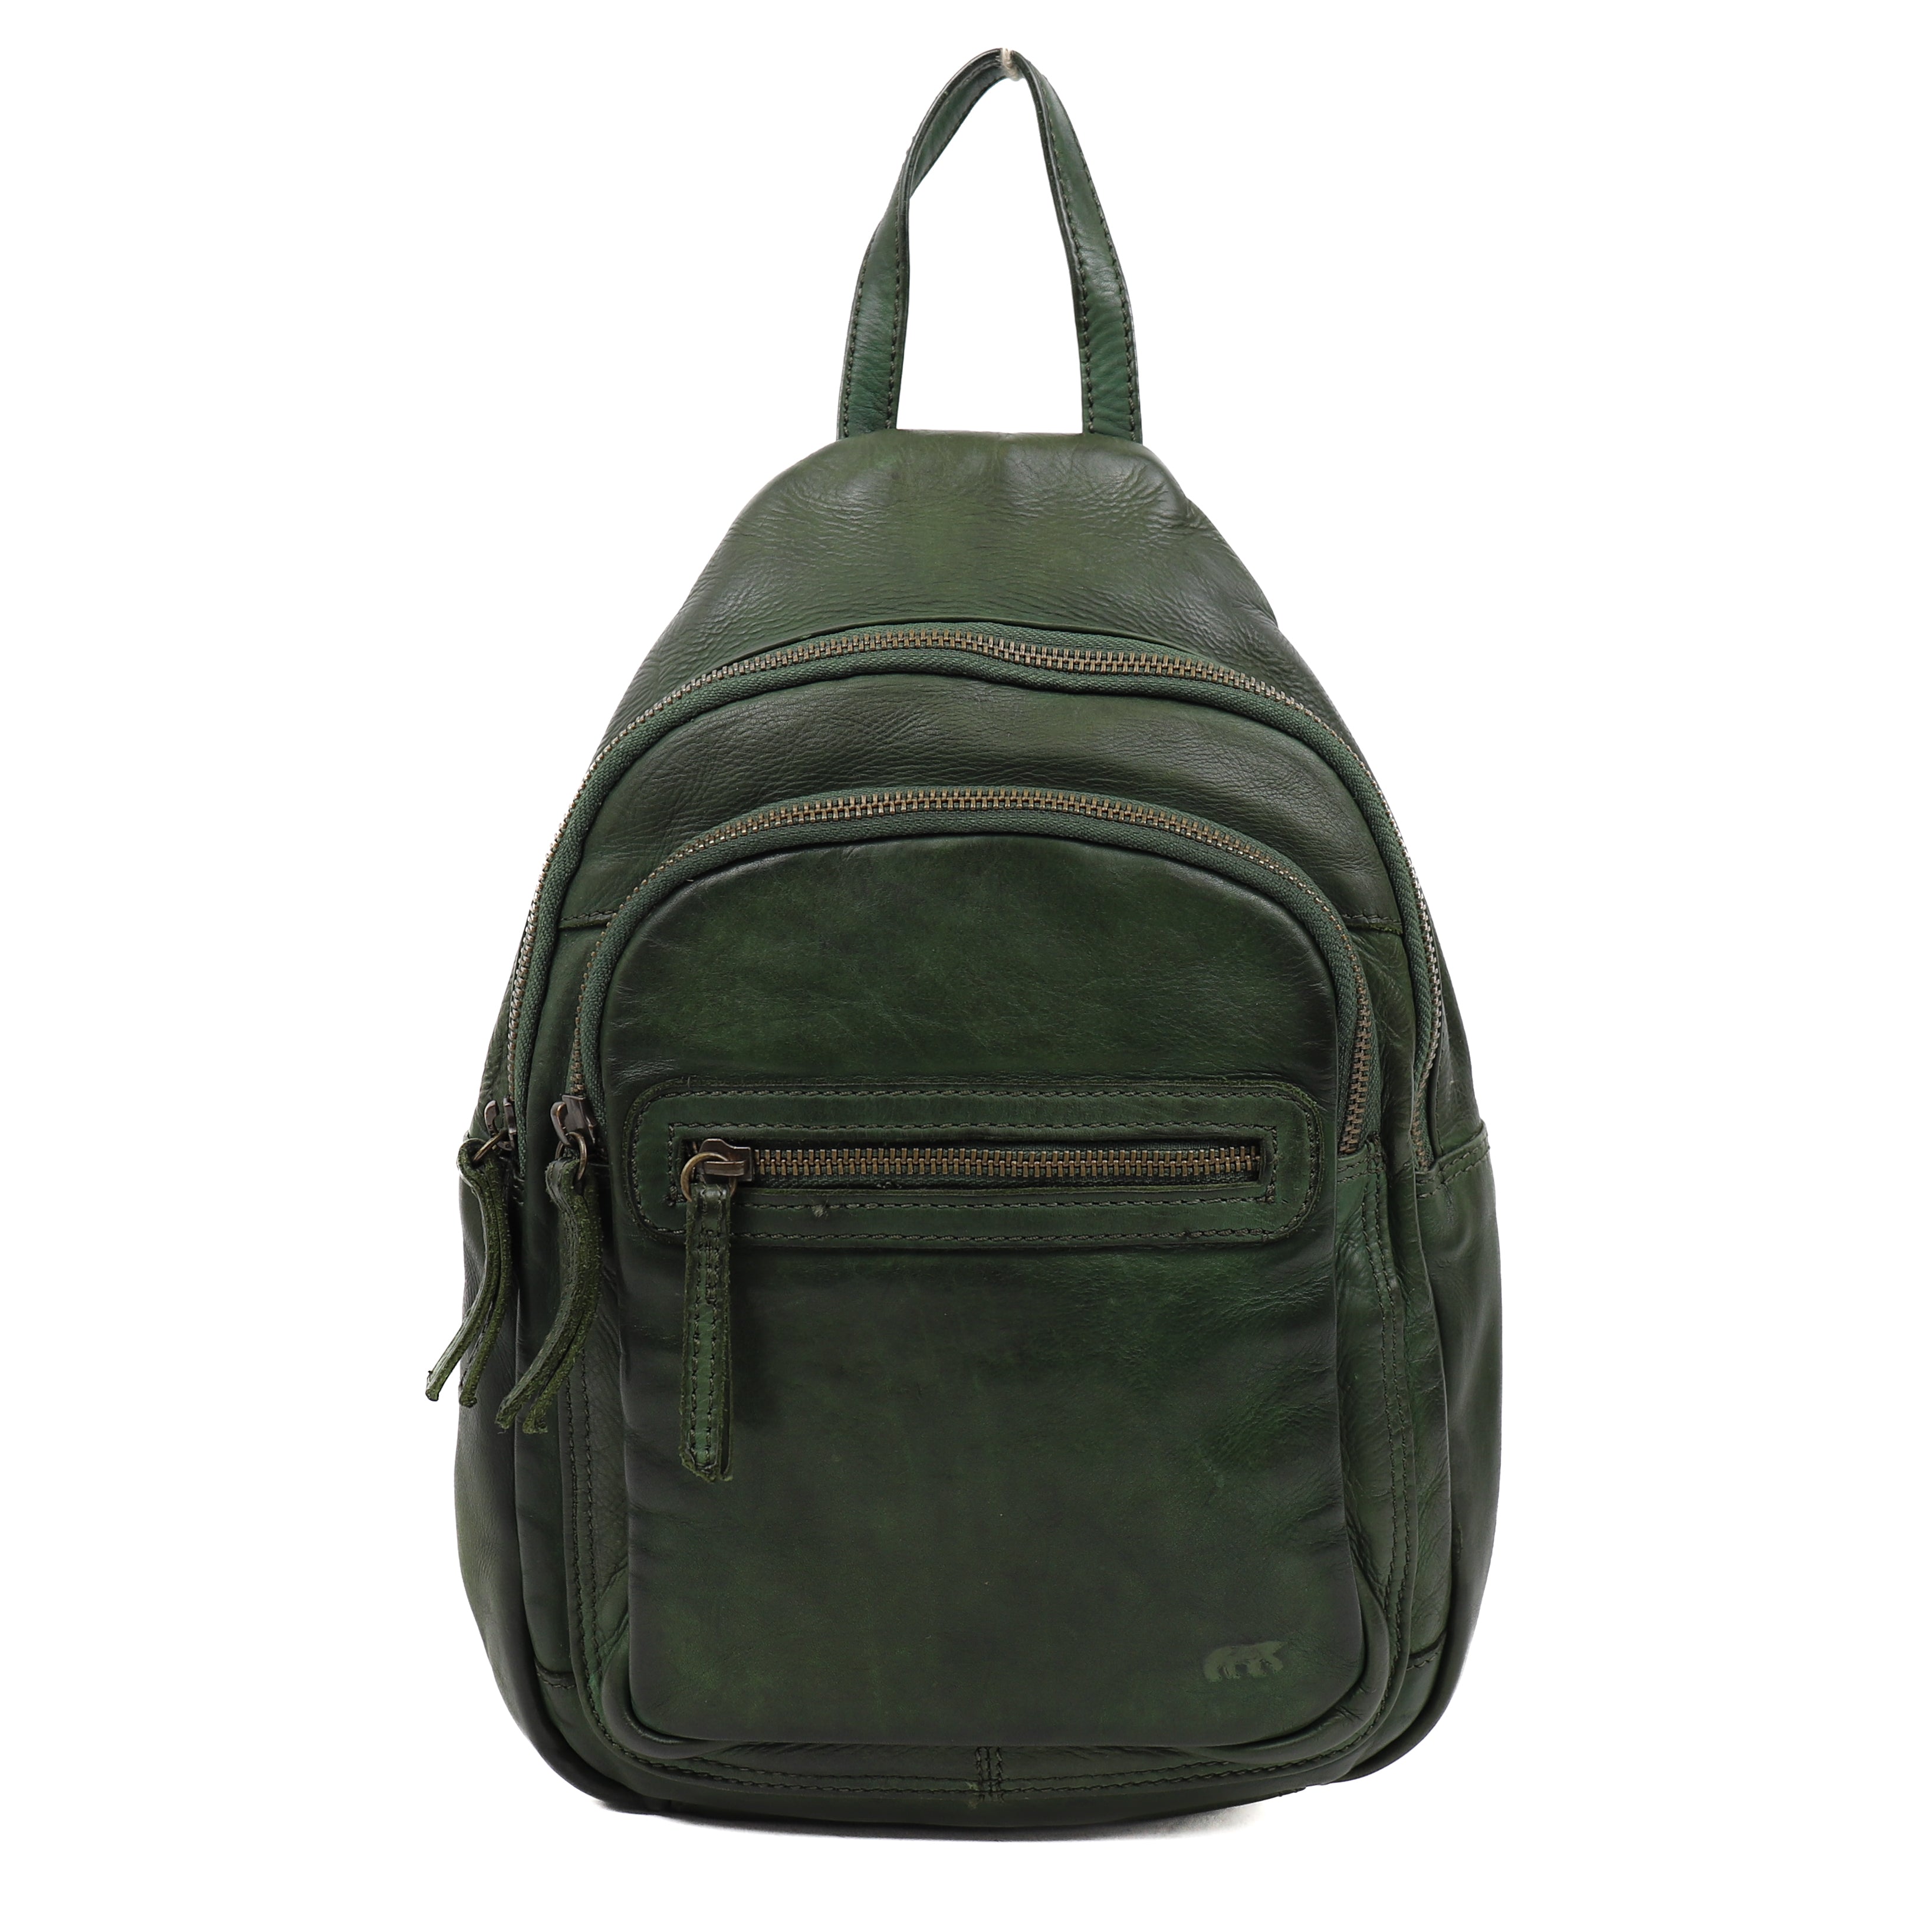 Backpack 'Joy' olive green - CL 36413